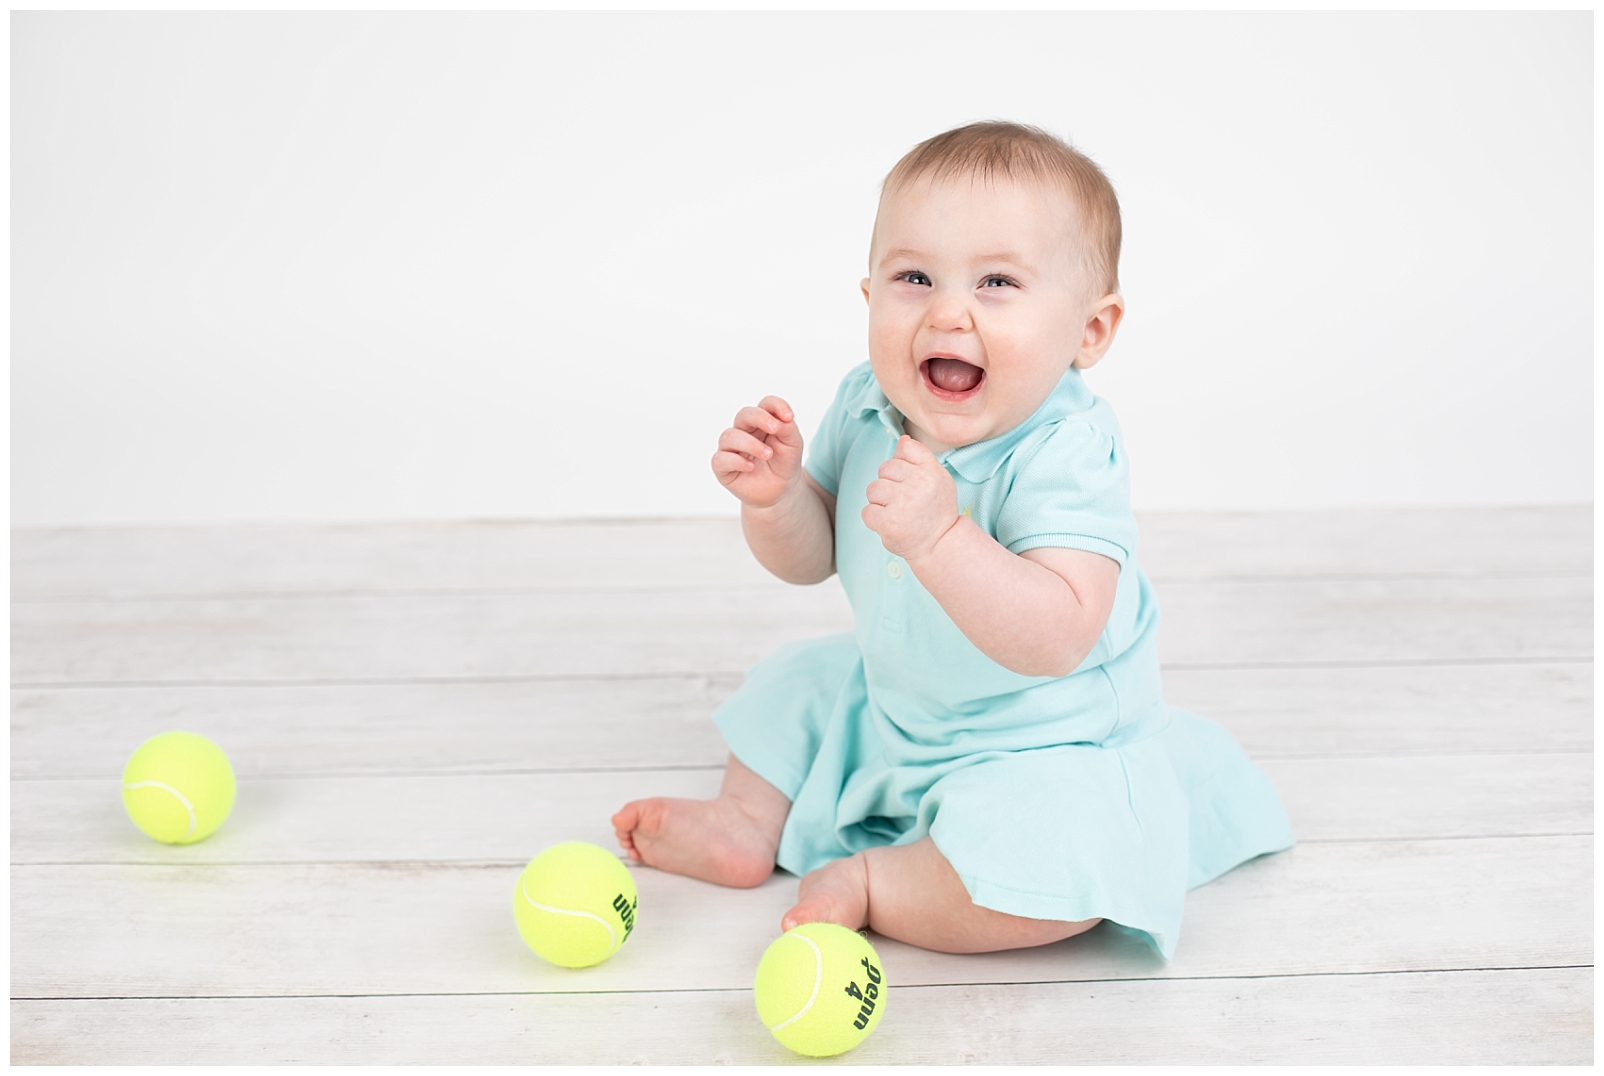 Smiling tennis baby